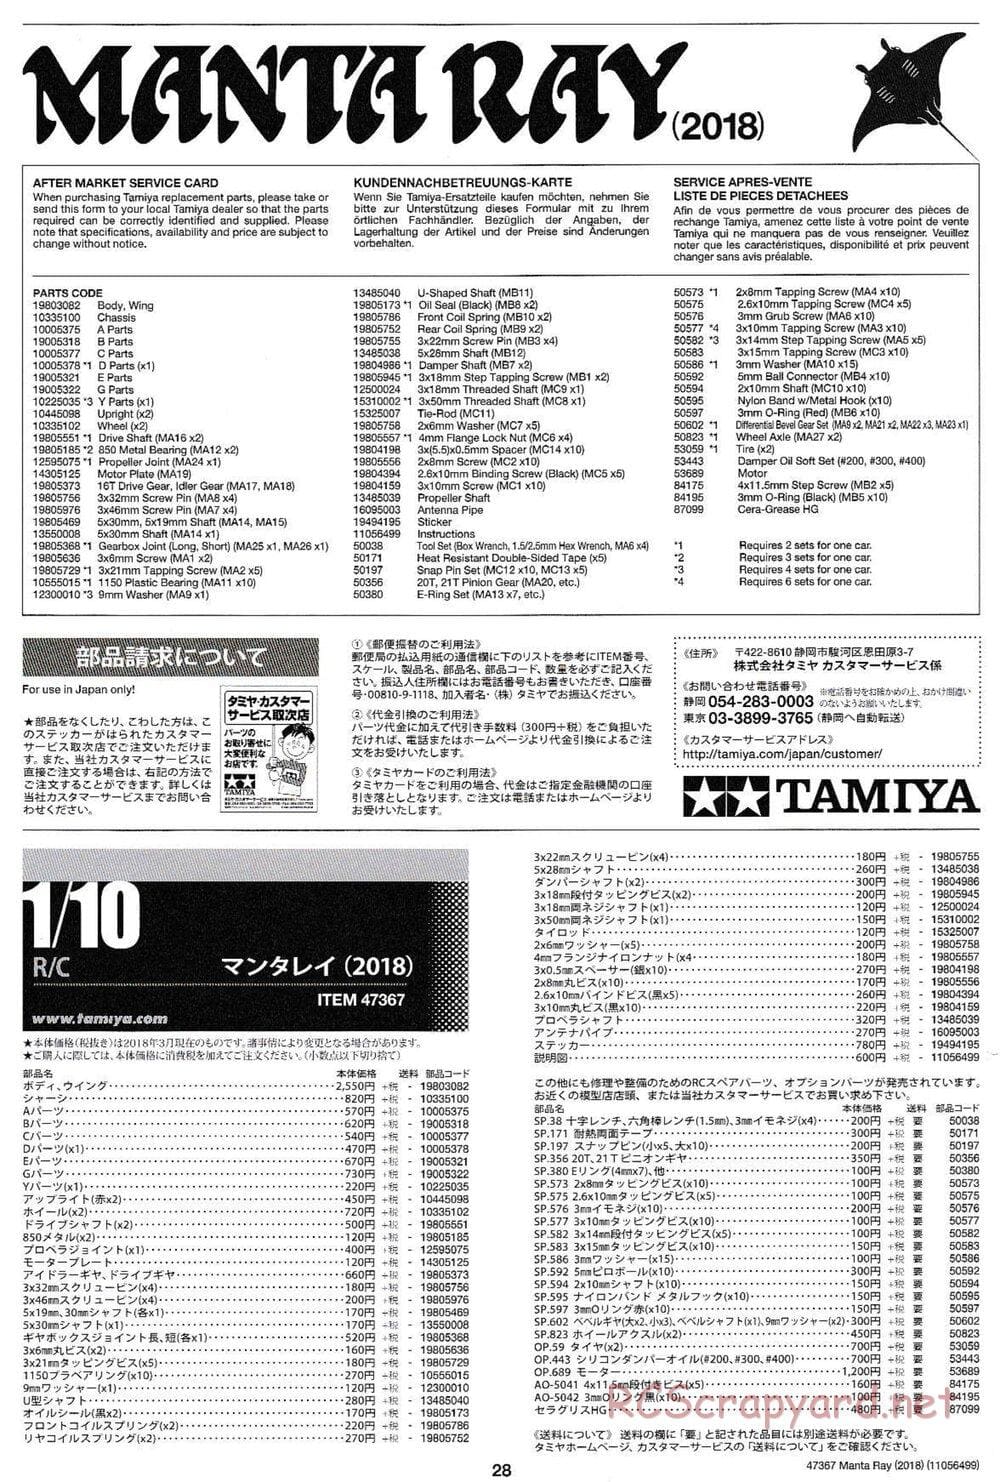 Tamiya - Manta Ray 2018 - DF-01 Chassis - Manual - Page 28